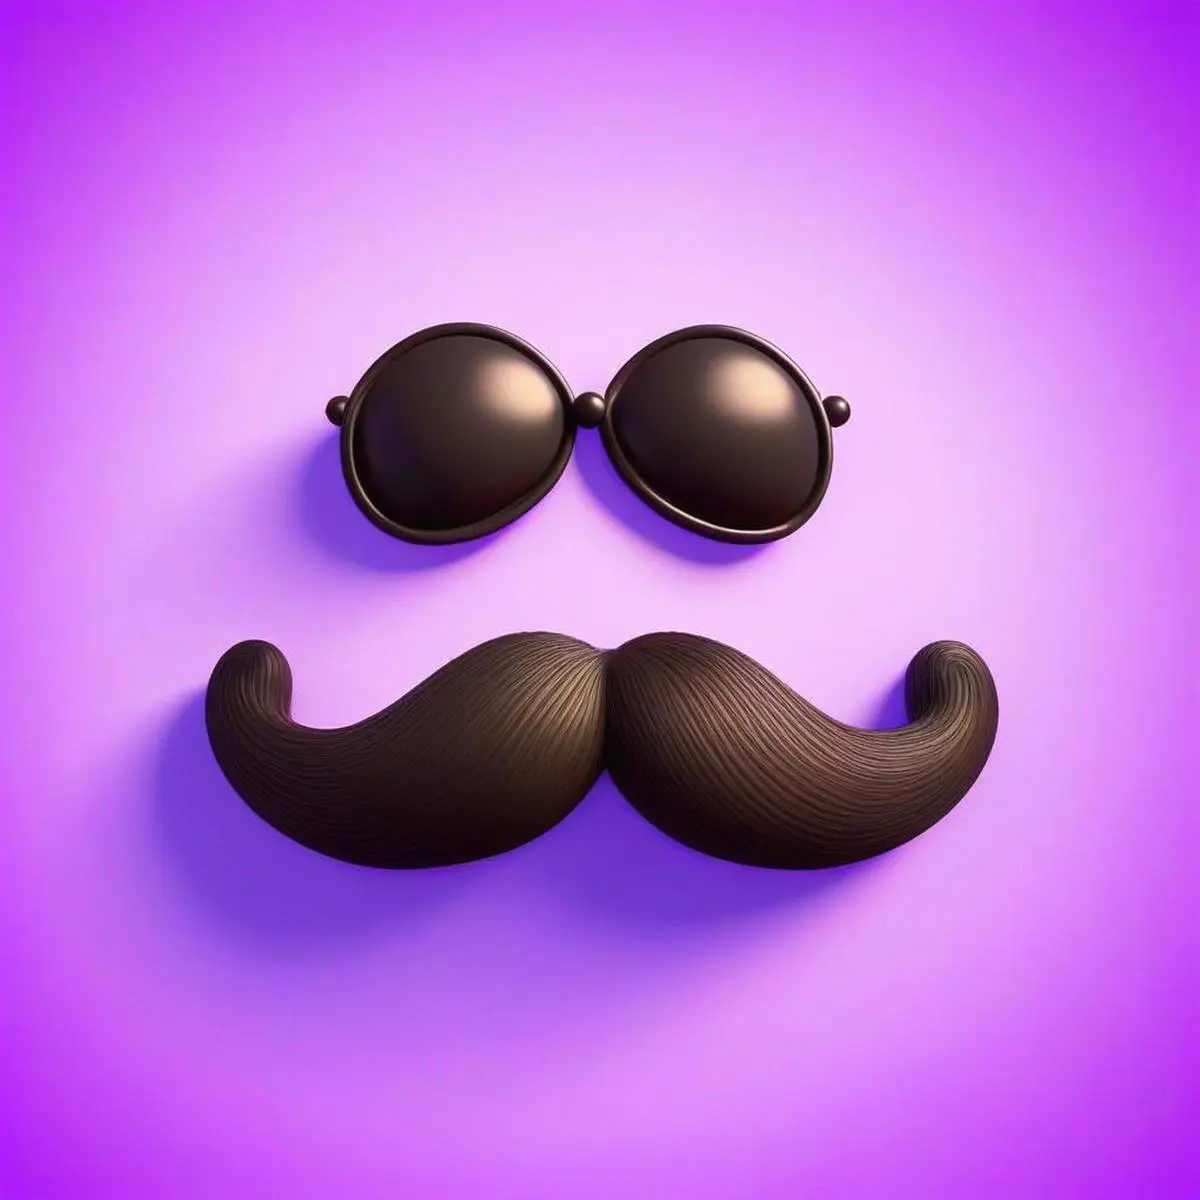 Moustache puns